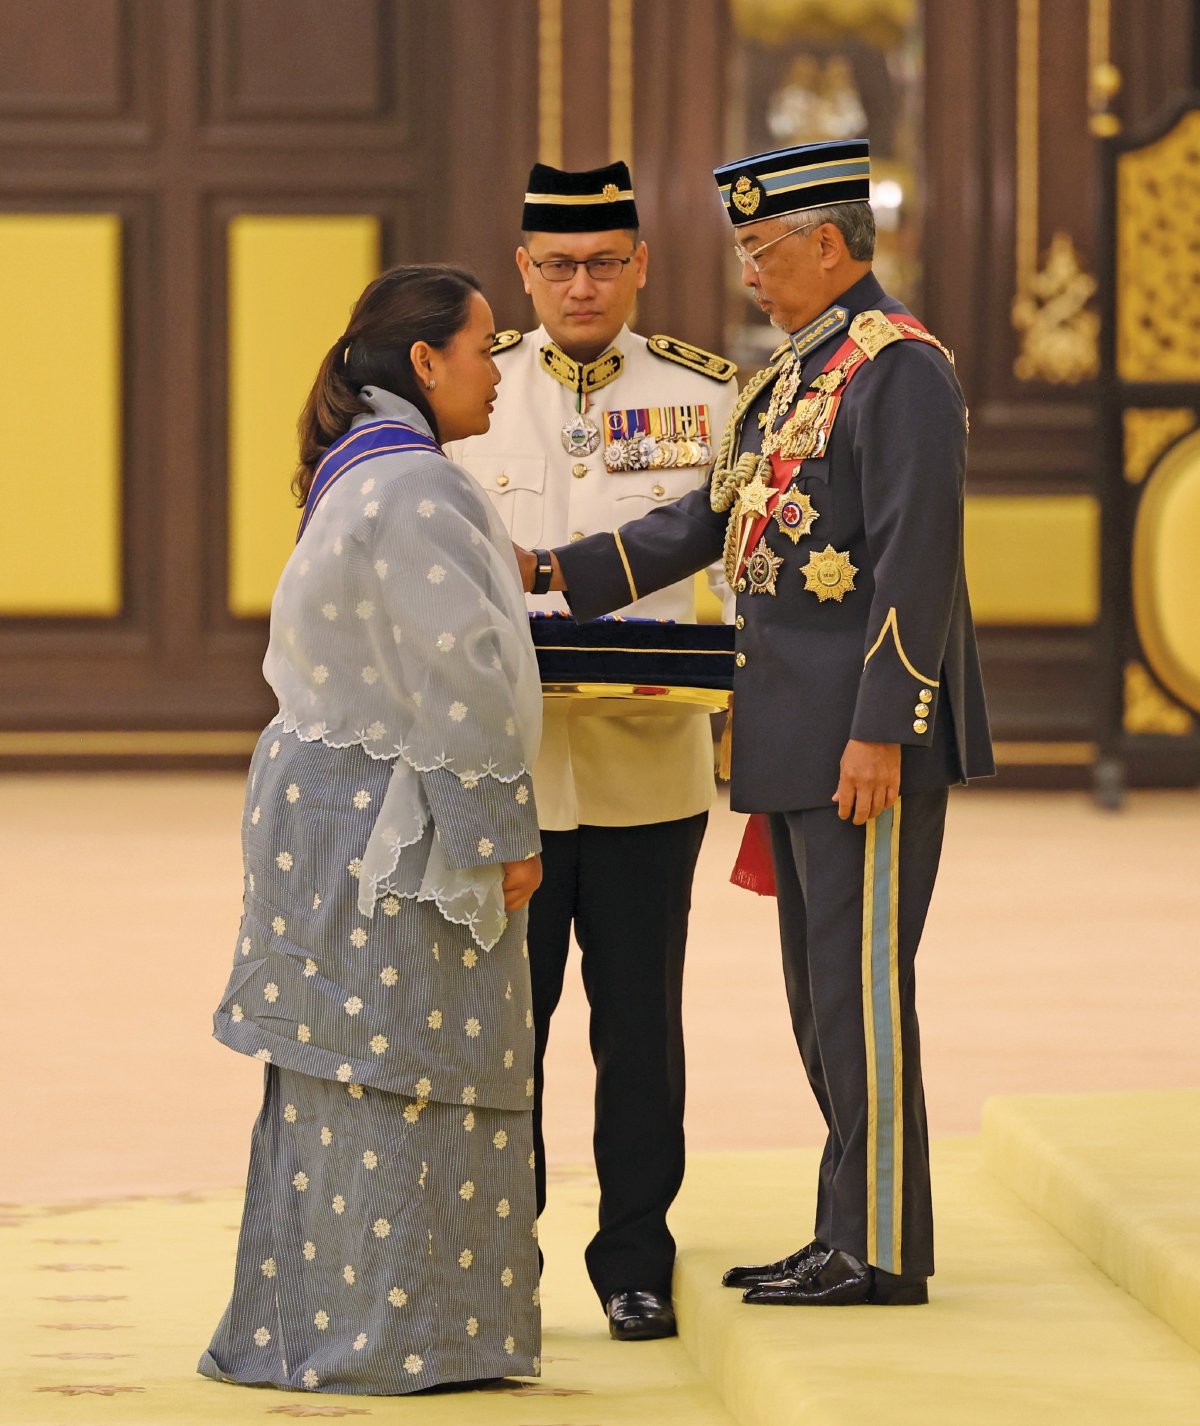 SHALIN menerima pingat Panglima Mahkota Wilayah (PMW) yang membawa gelaran Datuk daripada Yang di-Pertuan Agong. - FOTO Bernama